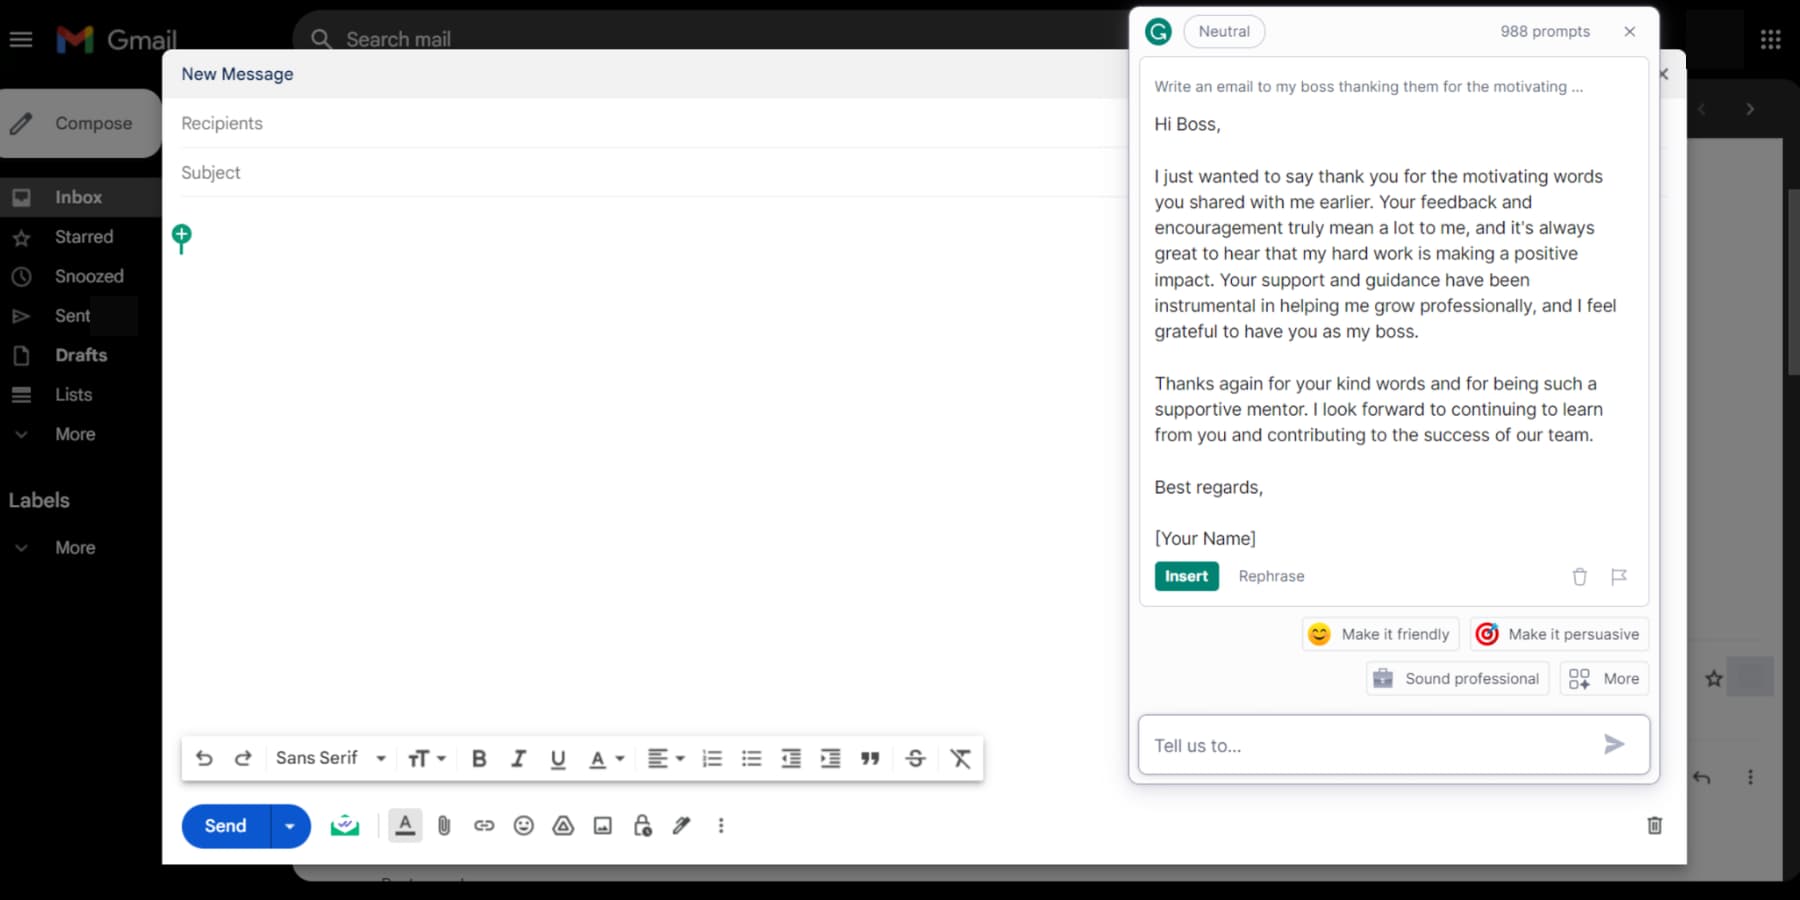 A screenshot of GrammarlyGO writing an email